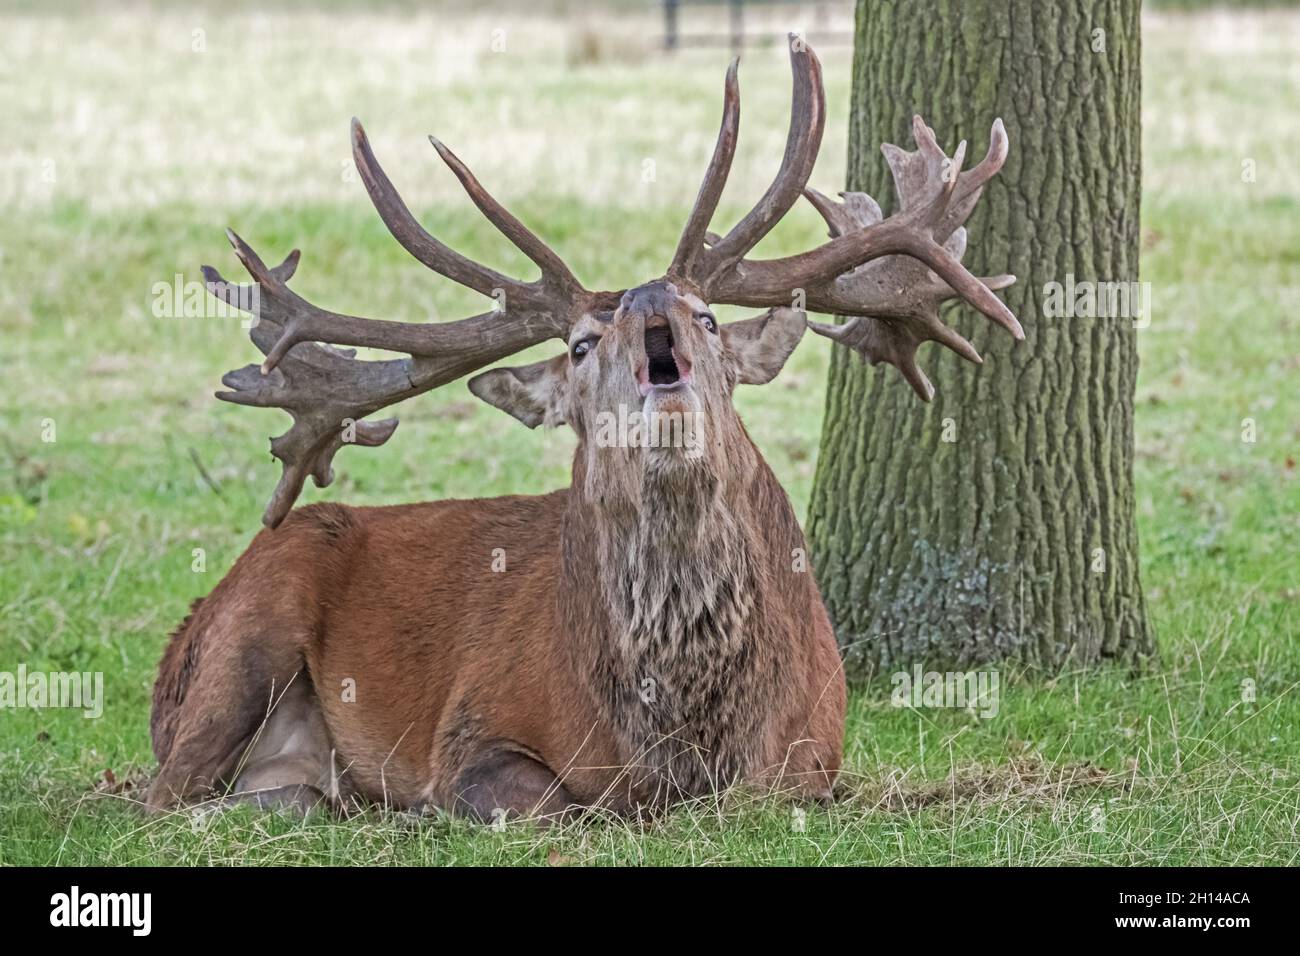 Red Stag Deer anglais présentant des bois, aboyant, hurlant et appelant, en ornières, en saison de reproduction. Woburn, Angleterre. Banque D'Images